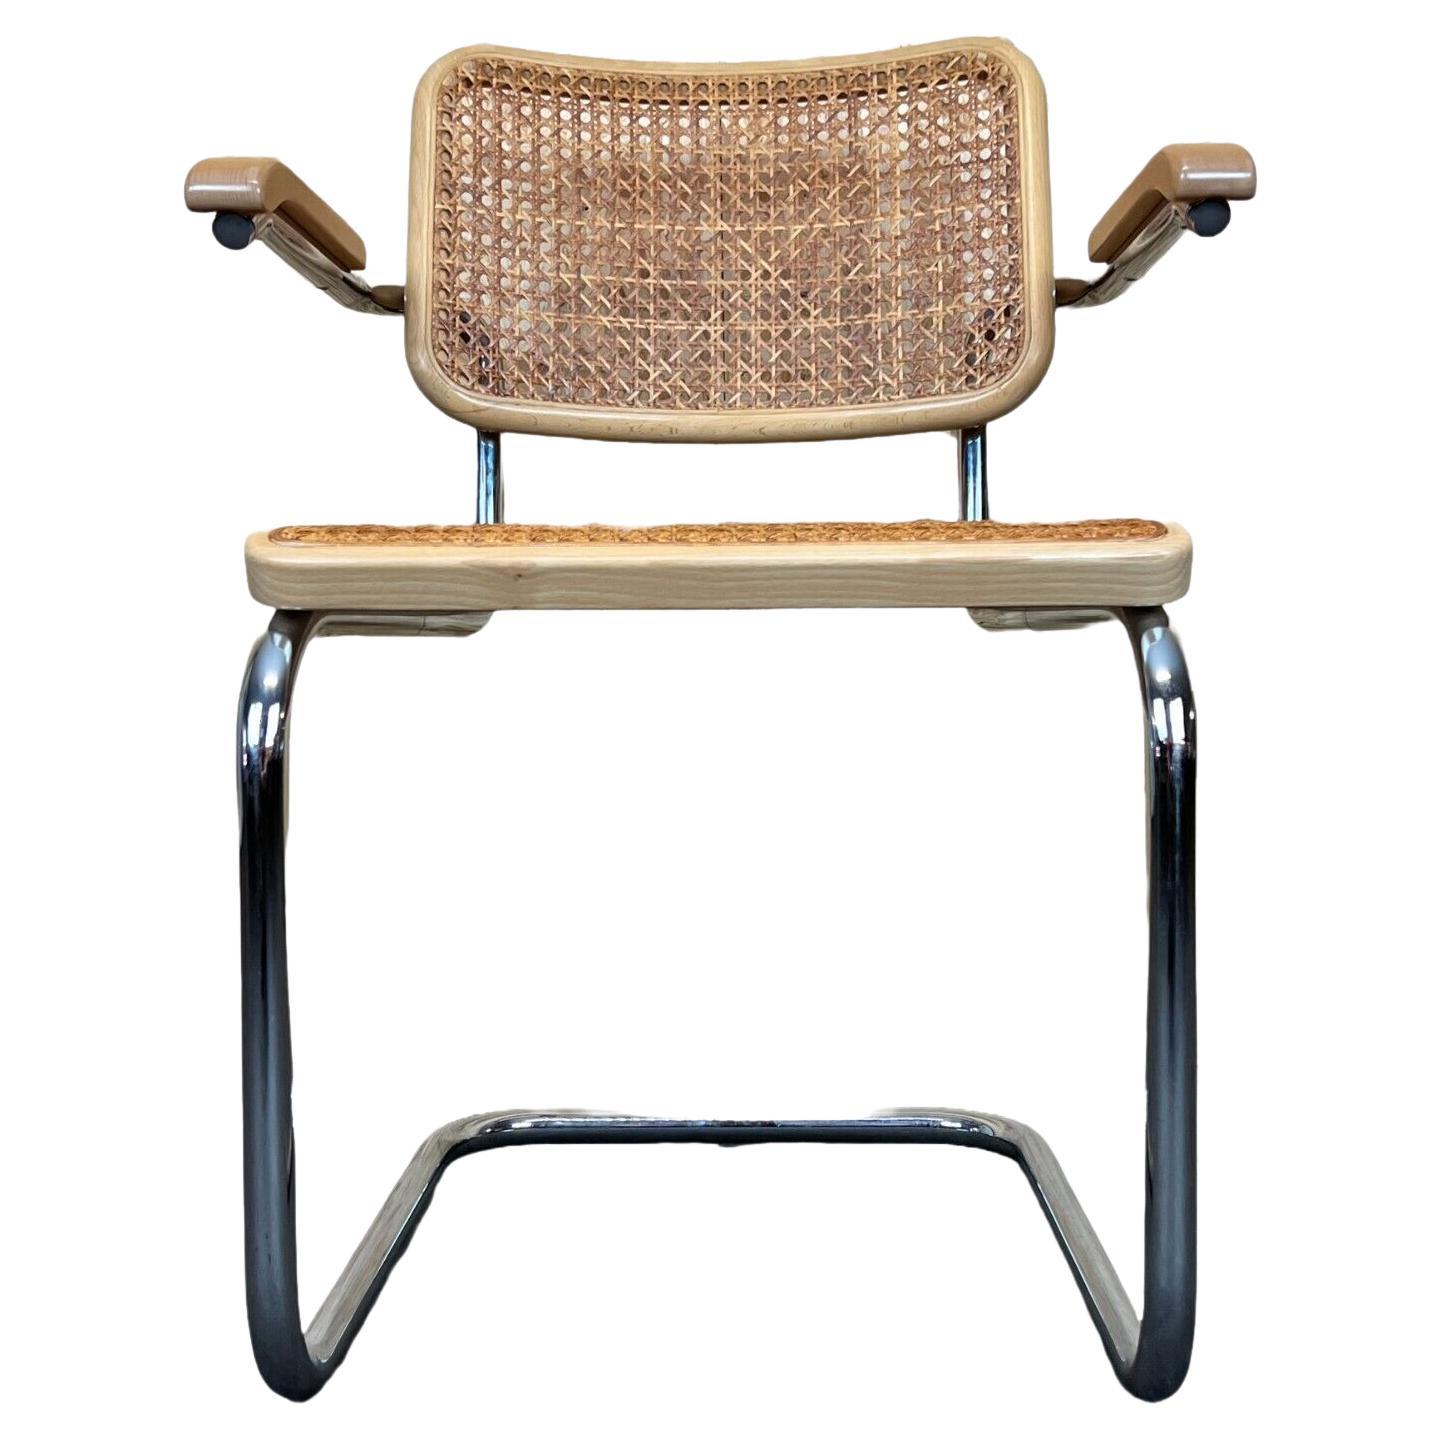 80s Chair Freischwiner Thonet 96 Chrome Armrest Chair Mesh Design For Sale